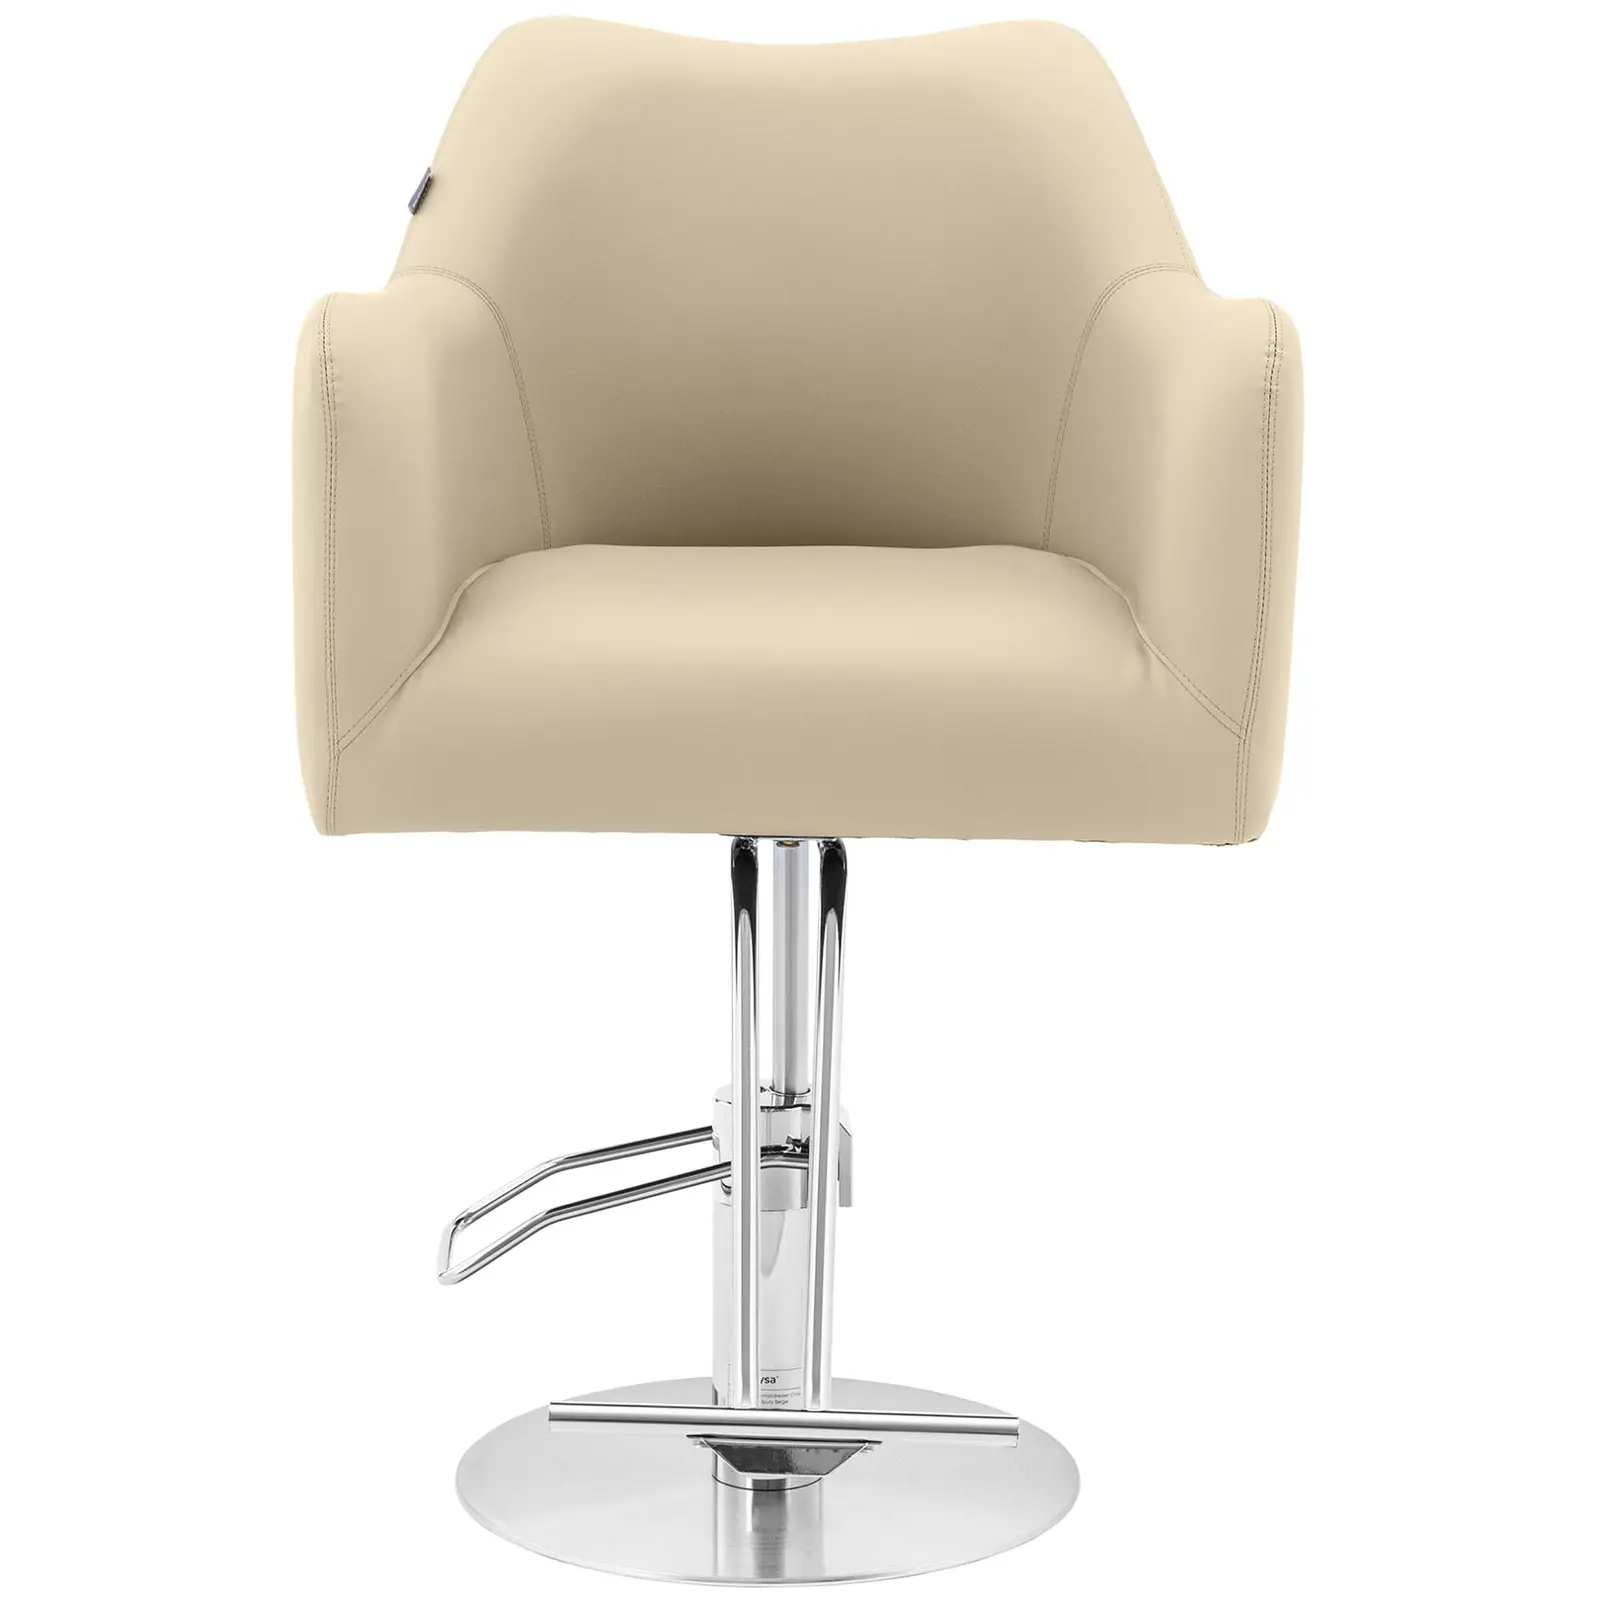 Cadeira de cabeleireiro com apoio para os pés - 880-1030 mm - 200 kg - Bege, Prata